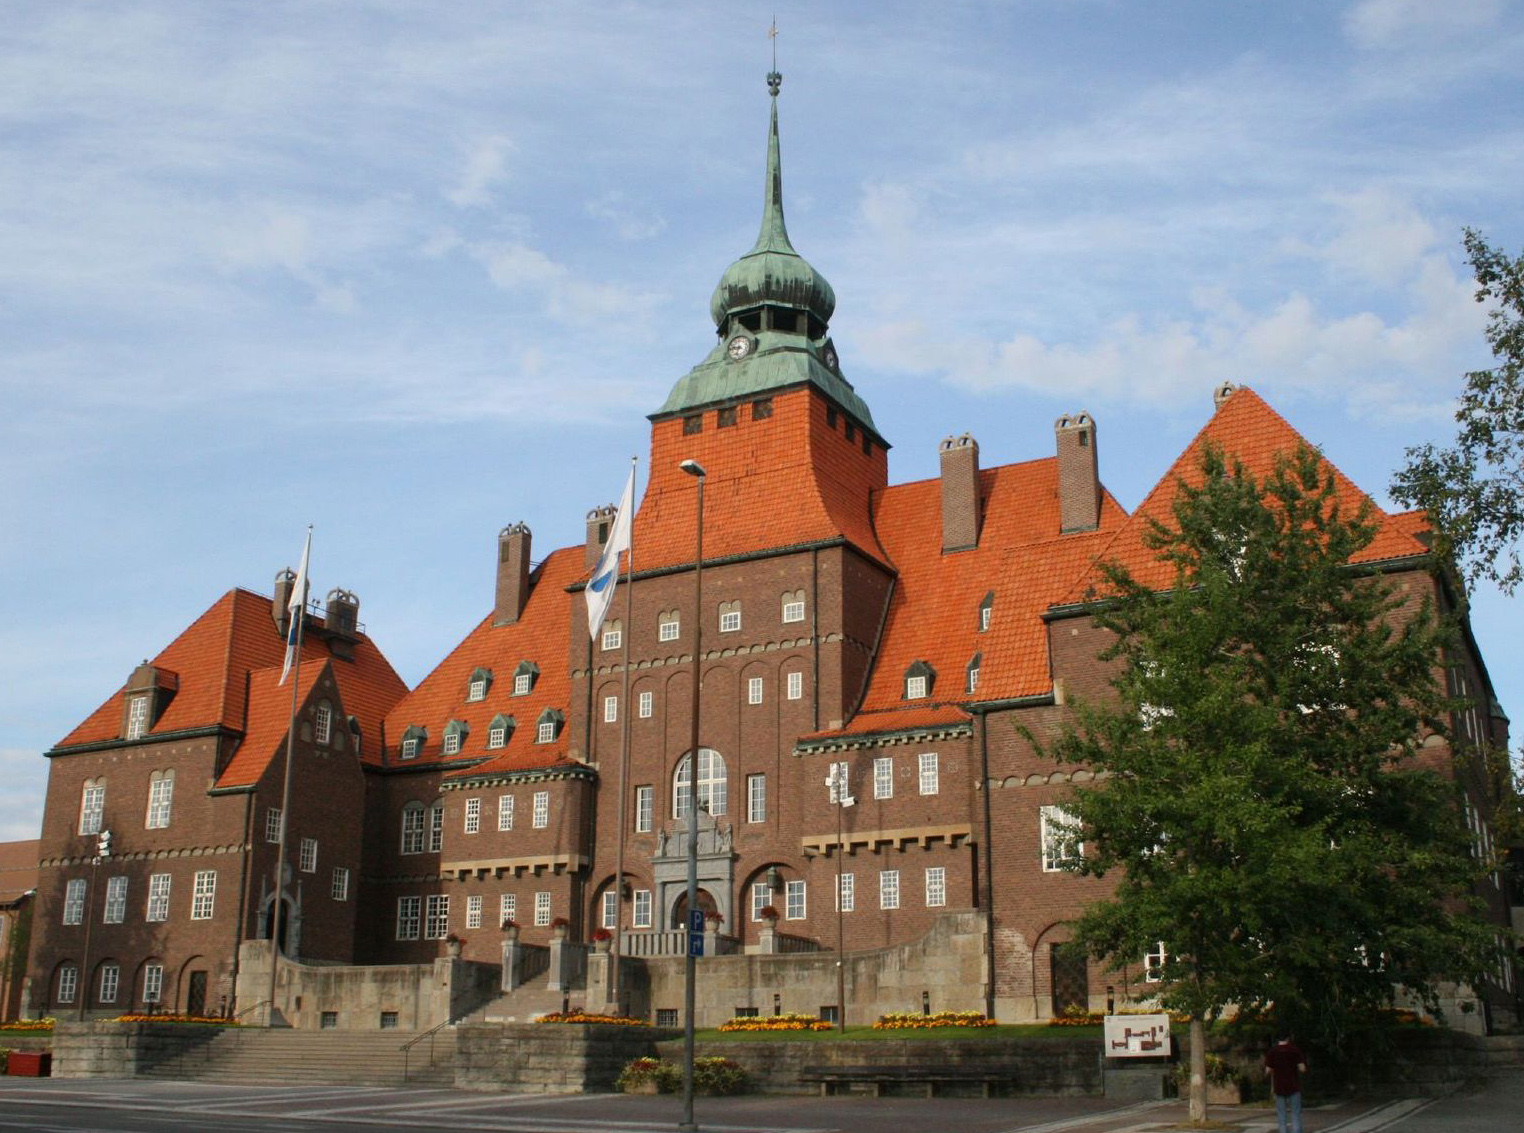 Är rådhuset i Östersund Sveriges vackraste byggnad genom tiderna?